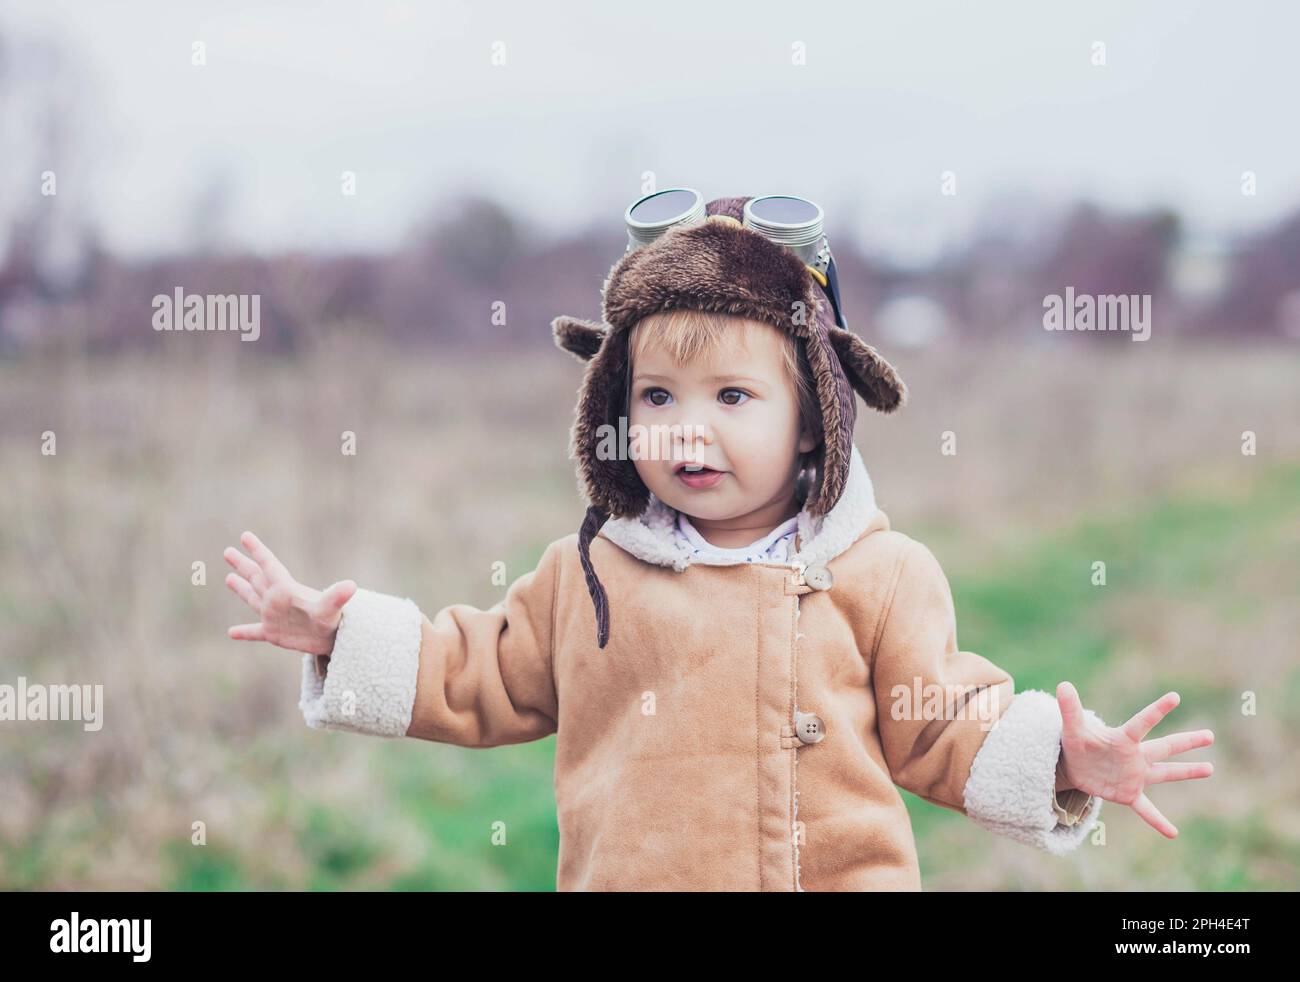 Das charmante Baby in Pilotenkleidung hob die Hände, als ob es fliegen würde Stockfoto